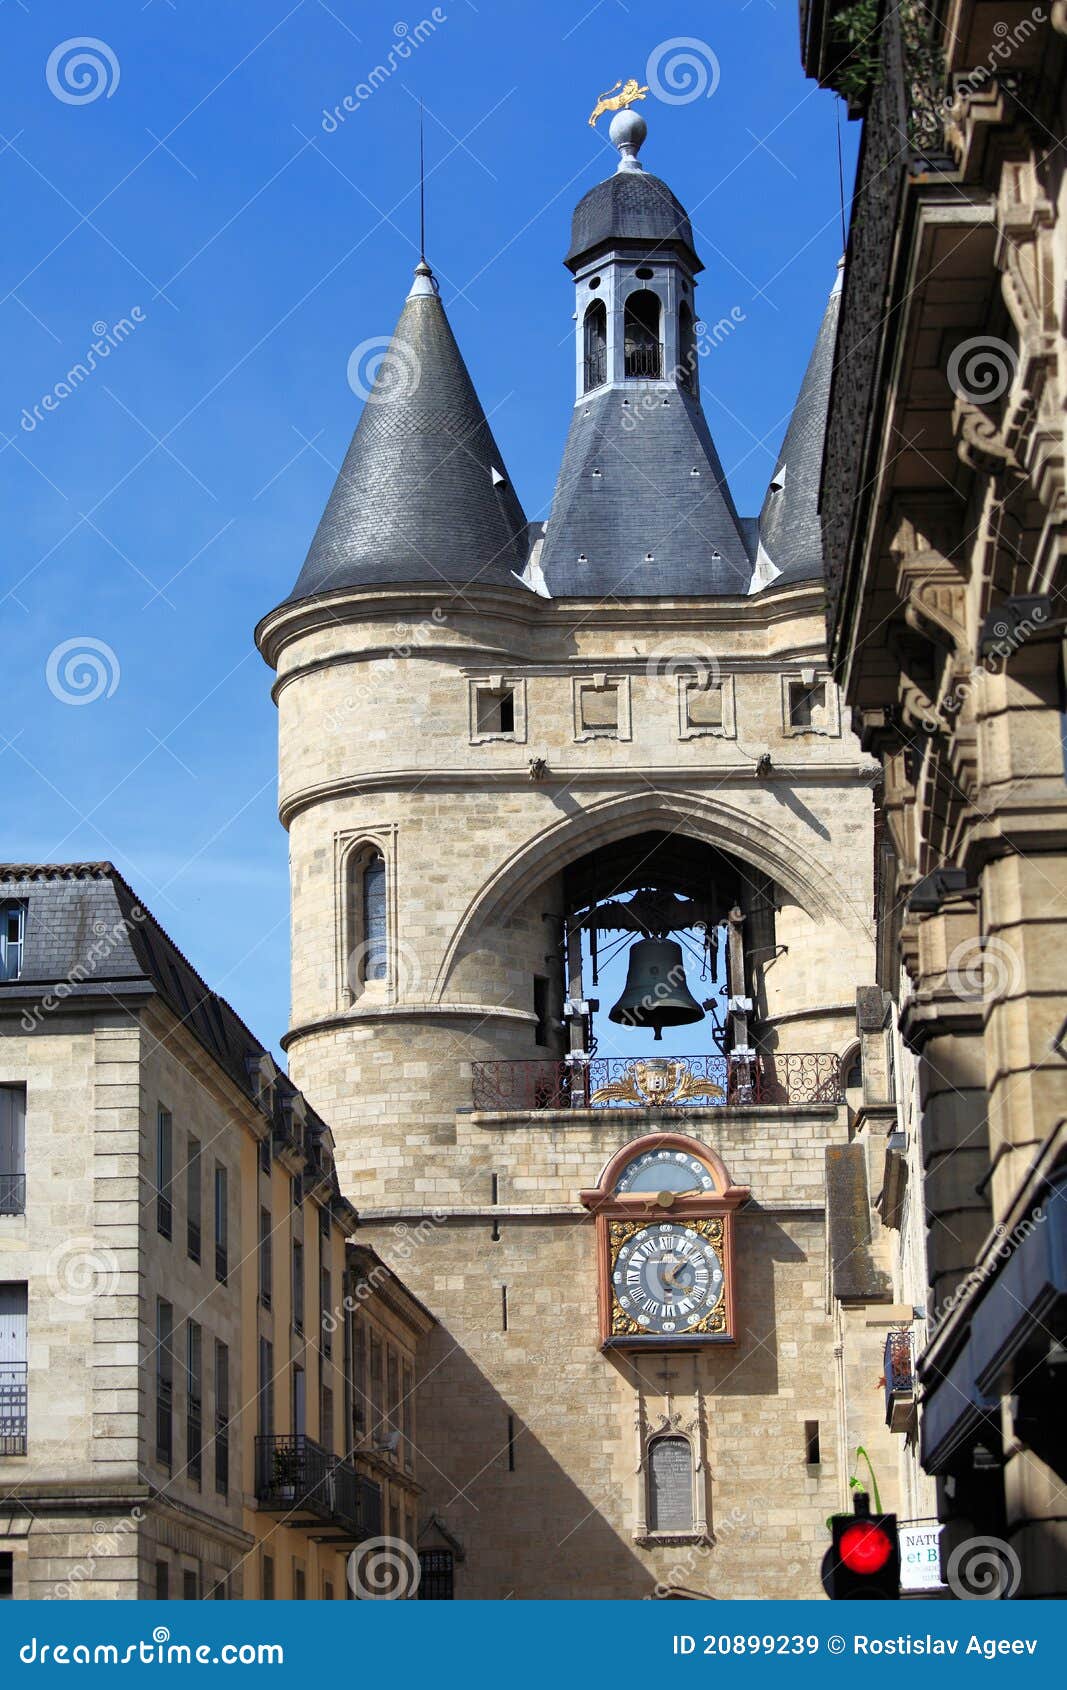 the grosse closhe bell tower, bordeaux